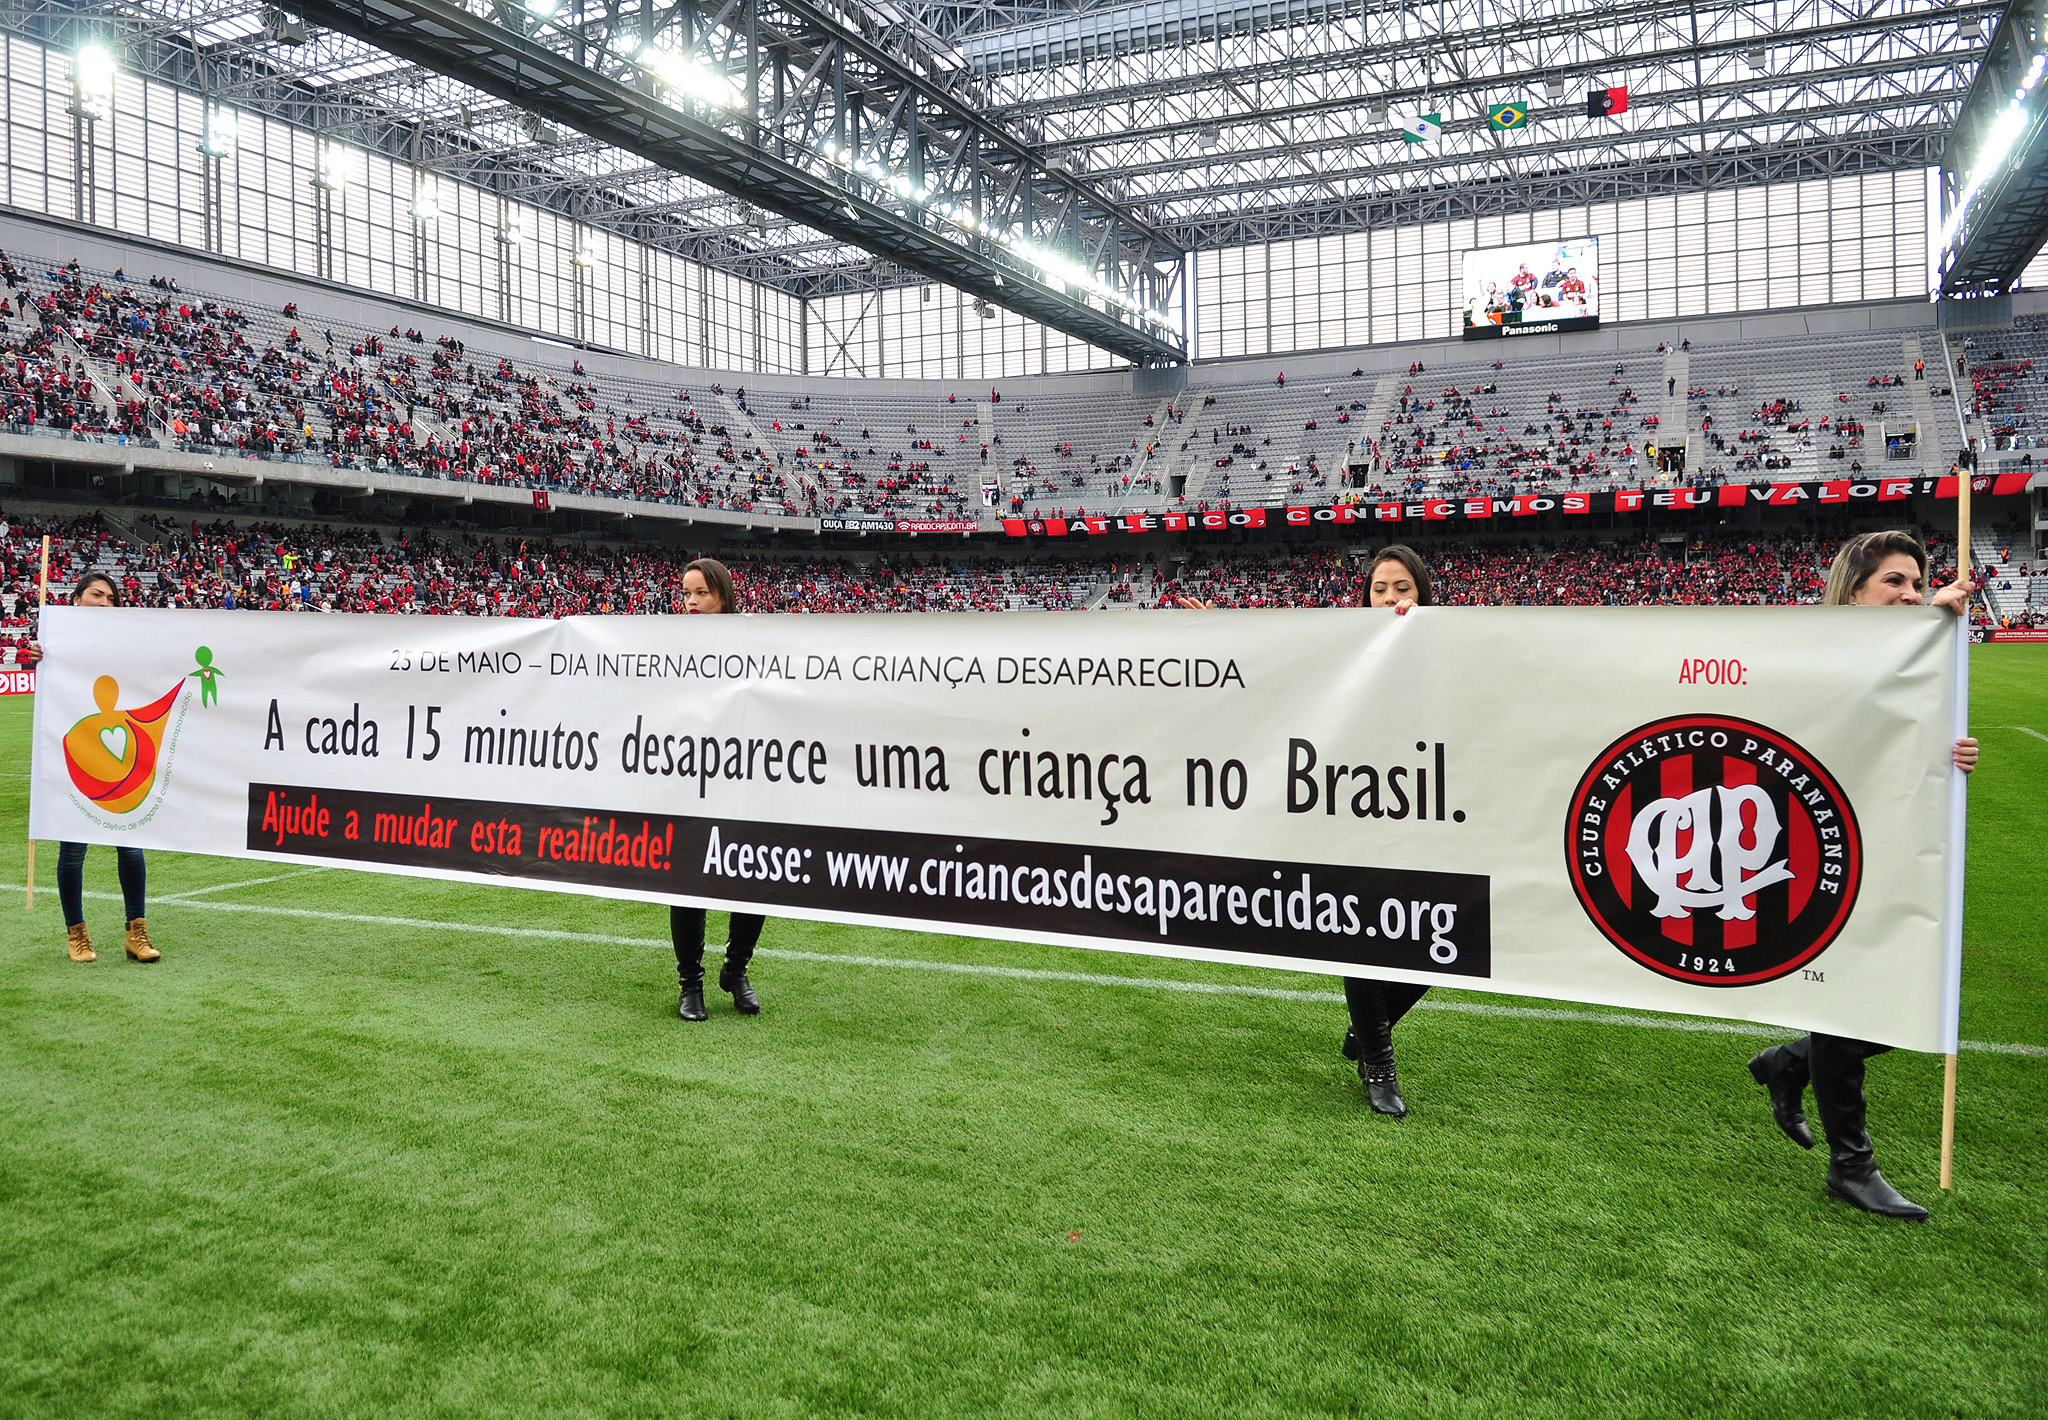 No último domingo, dia 22, o Atlético Paranaense passou a faixa da campanha durante o intervalo do jogo no estádio Arena da Baixada.